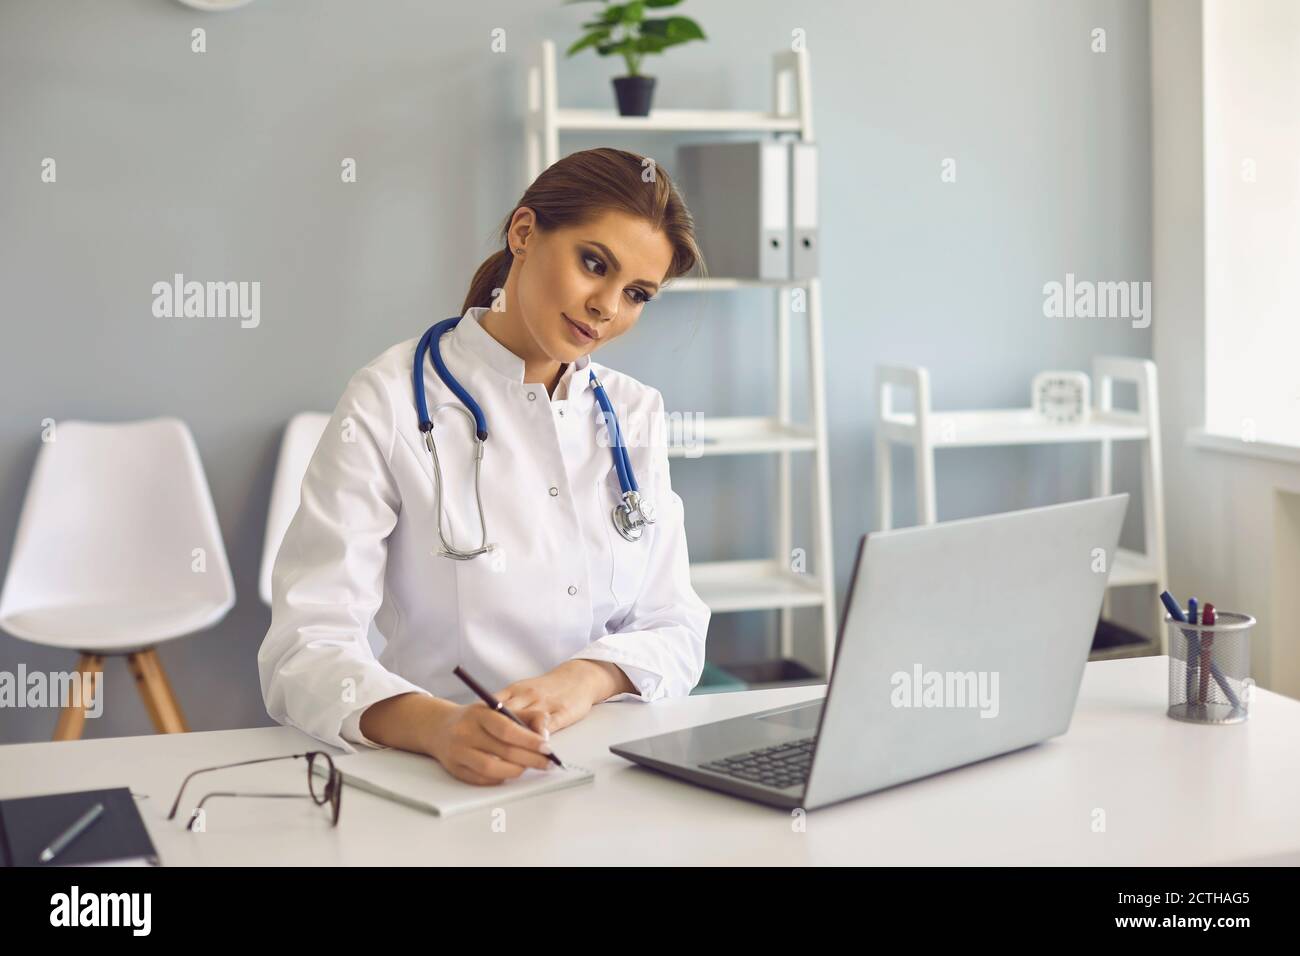 Femme médecin prenant des notes pendant une leçon en ligne ou un appel vidéo consultation en clinique médicale Banque D'Images